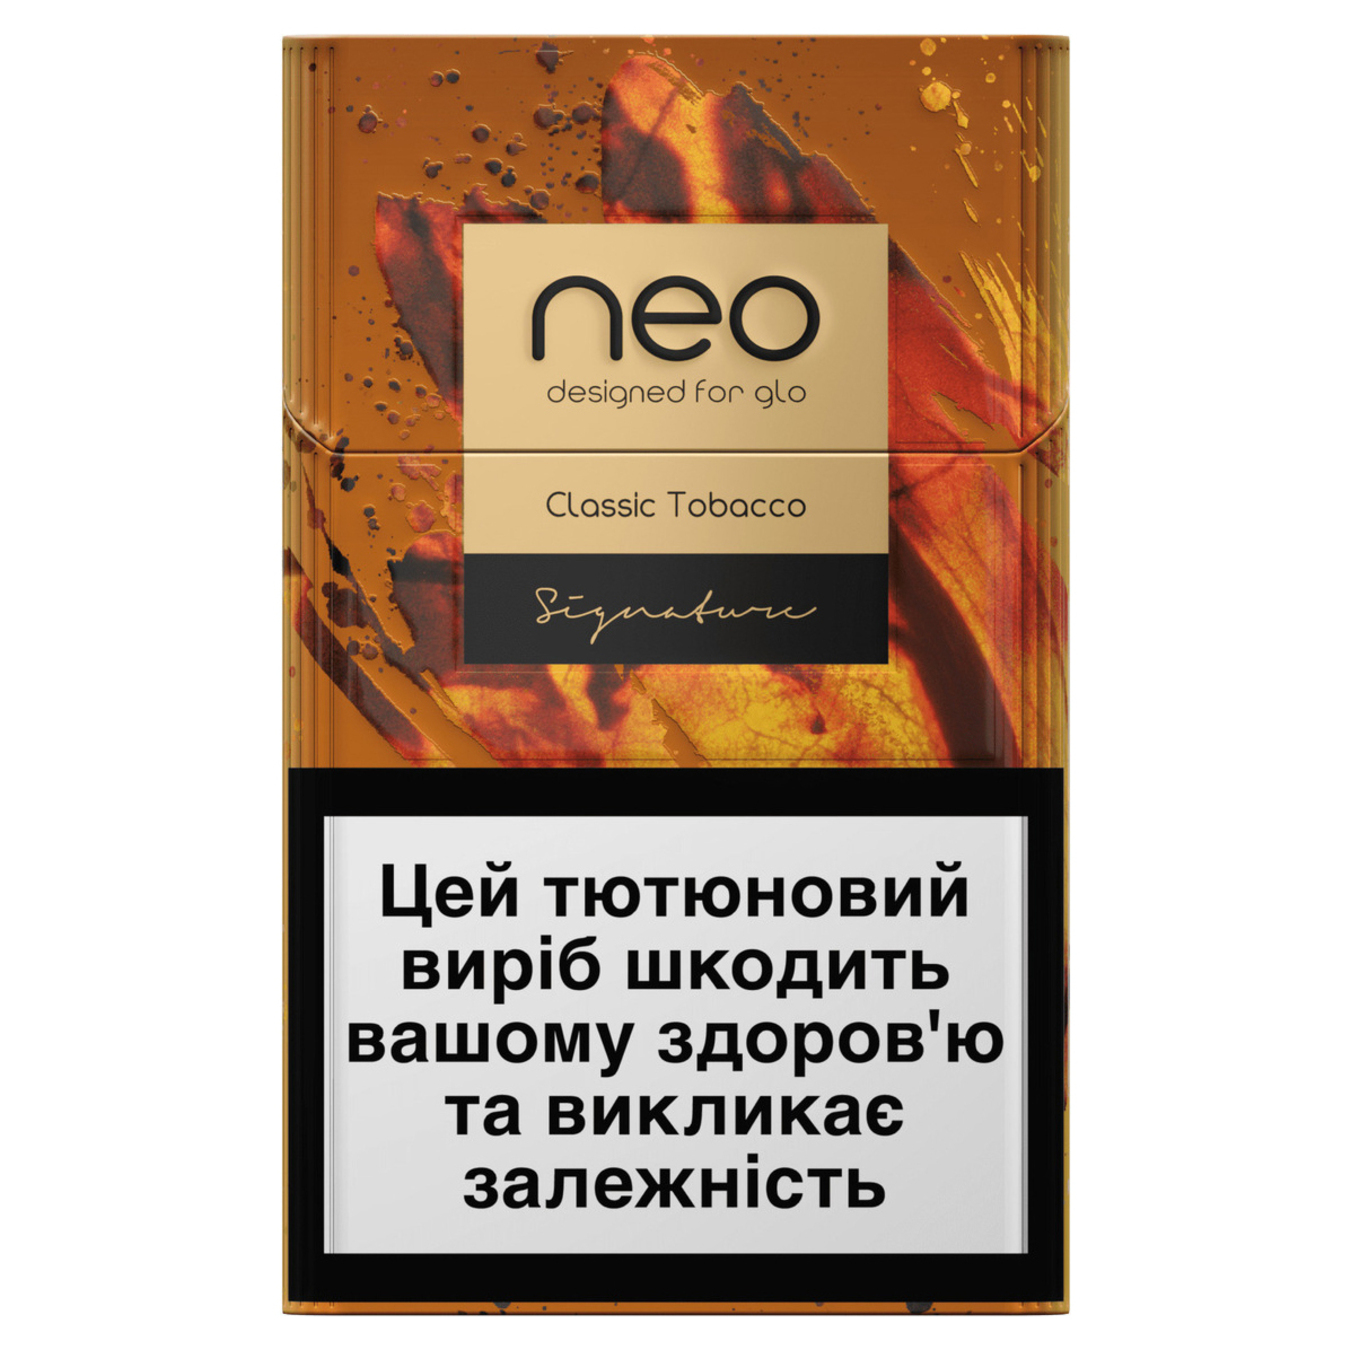 Стики Neo Demi Classic Tobacco табакосодержащие 20шт (цена указана без акциза)